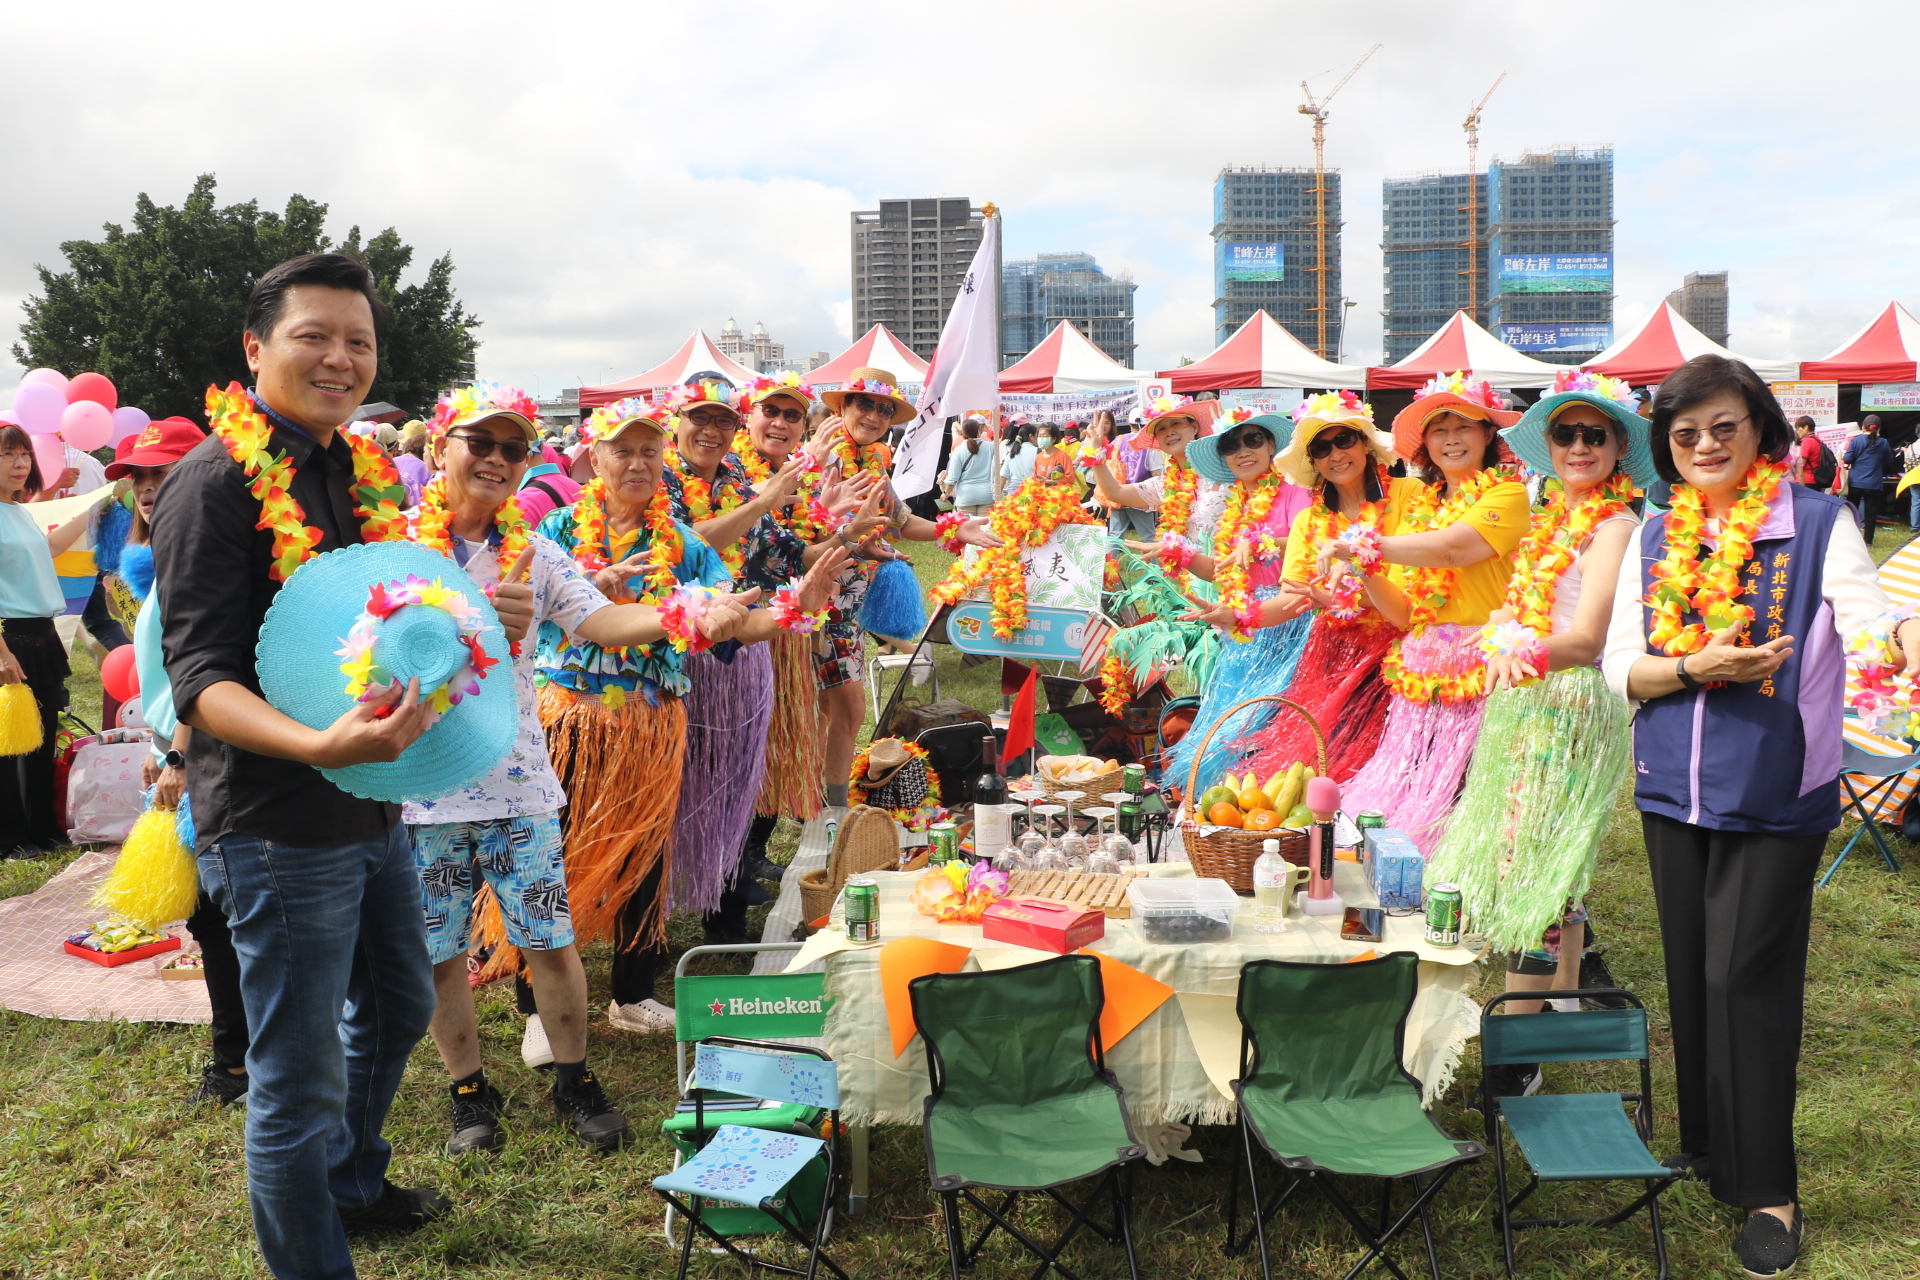  朱惕之一一繞場露營野餐趣攤位 被一群打扮成夏威夷女郎的志工包圍 右1為社會局長李美珍